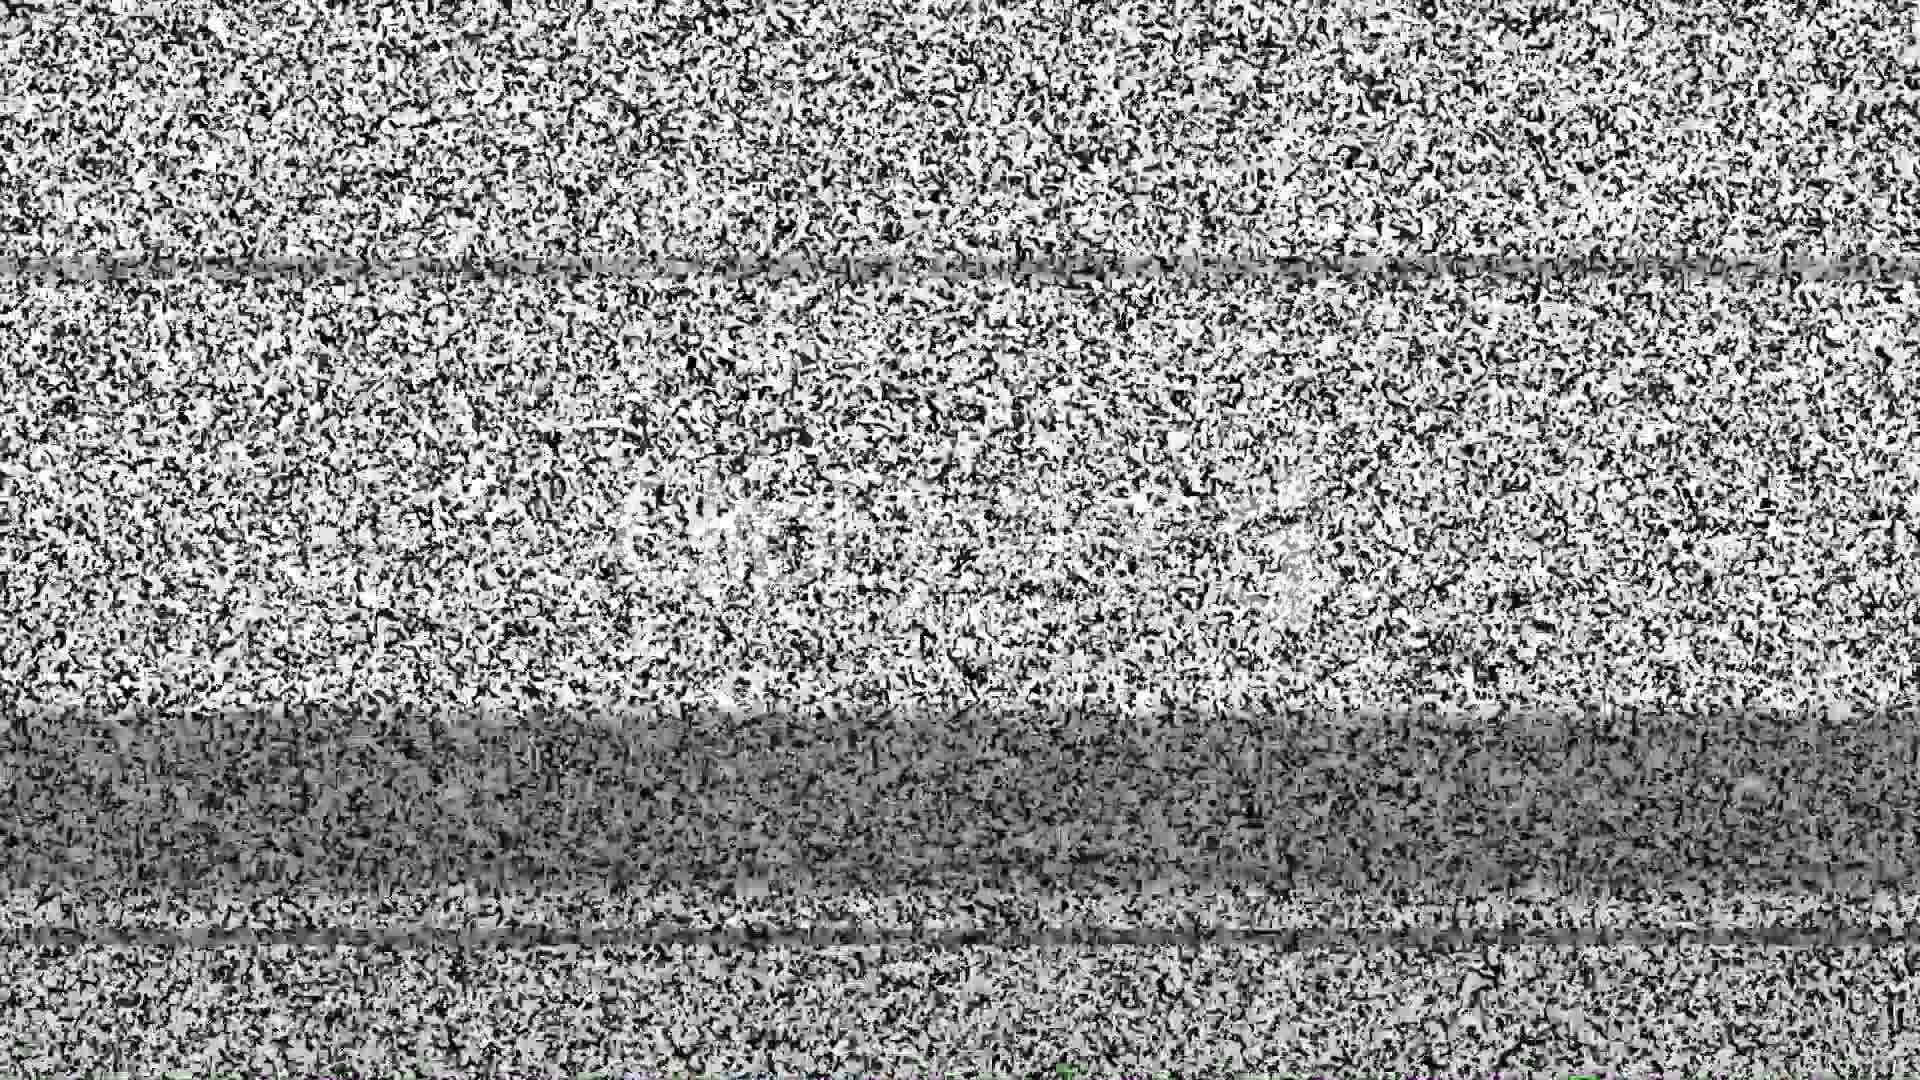 Umaimagem Em Preto E Branco De Uma Tela De Televisão